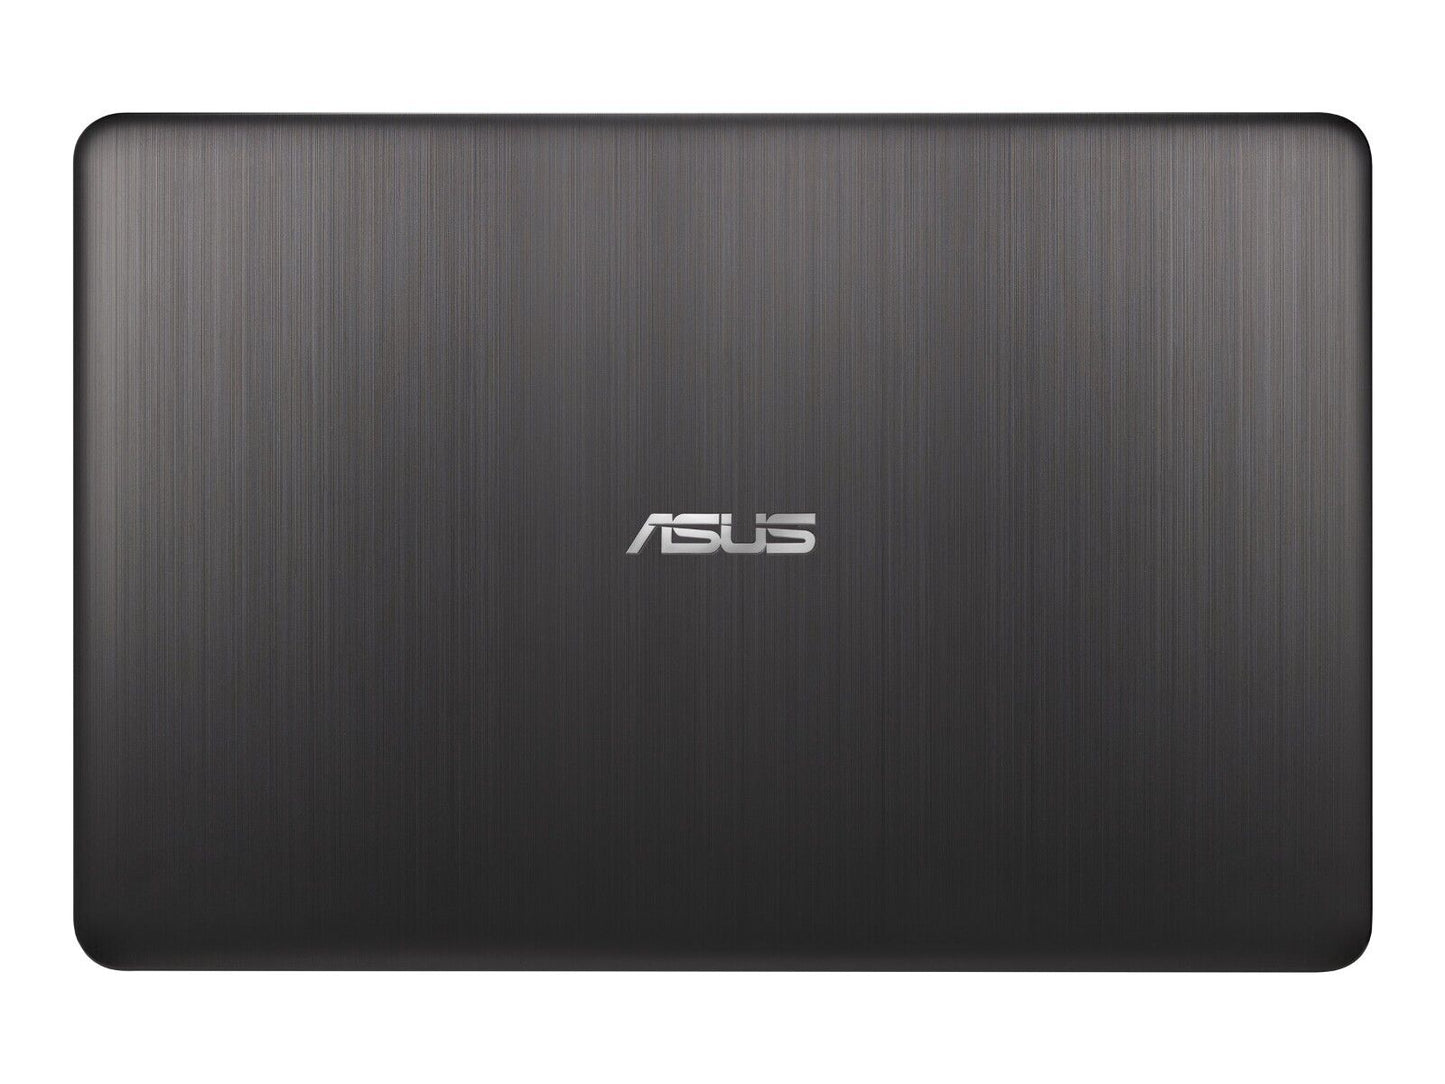 ASUS R540NA 15.6" Celeron N 4GB 500GB HDD Laptop - R540NA-RS02 Used